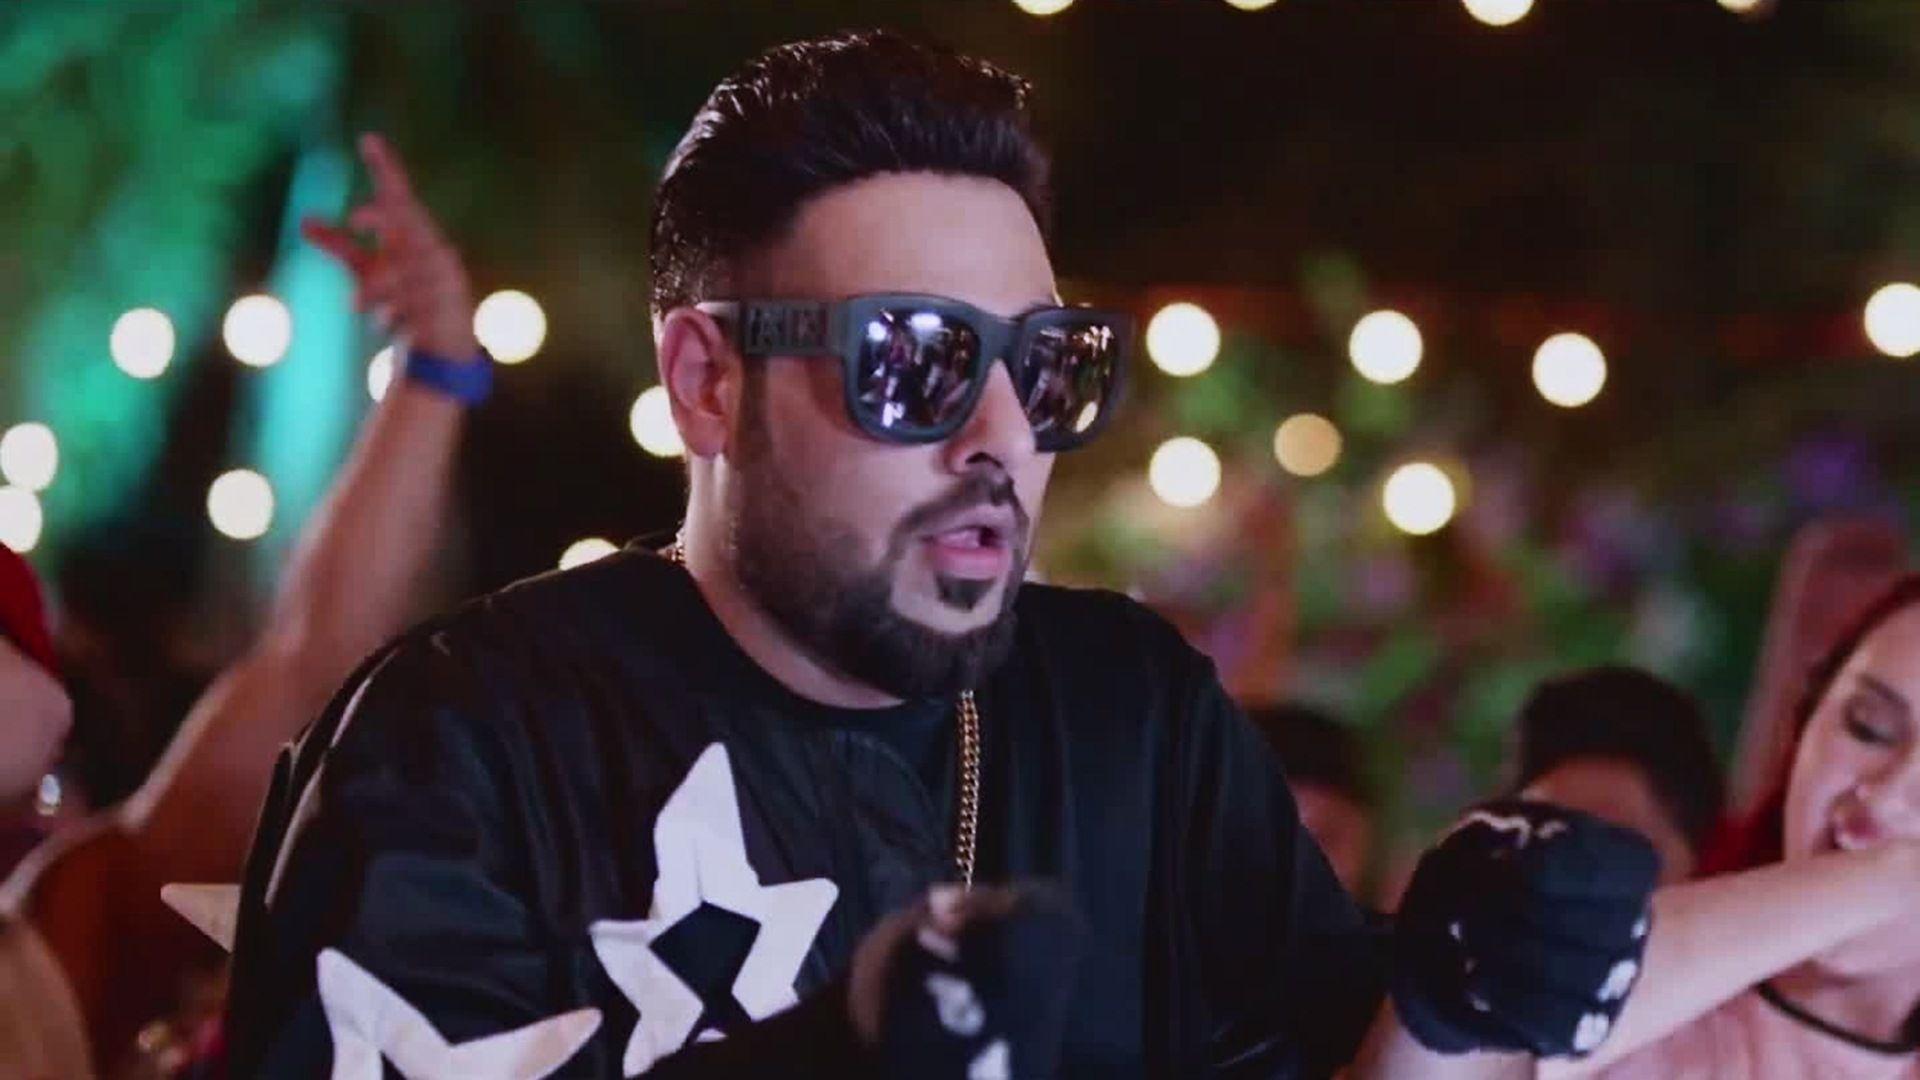 Badshah vs Yo Yo Honey Singh: Which Singer's music makes you twerk? |  IWMBuzz